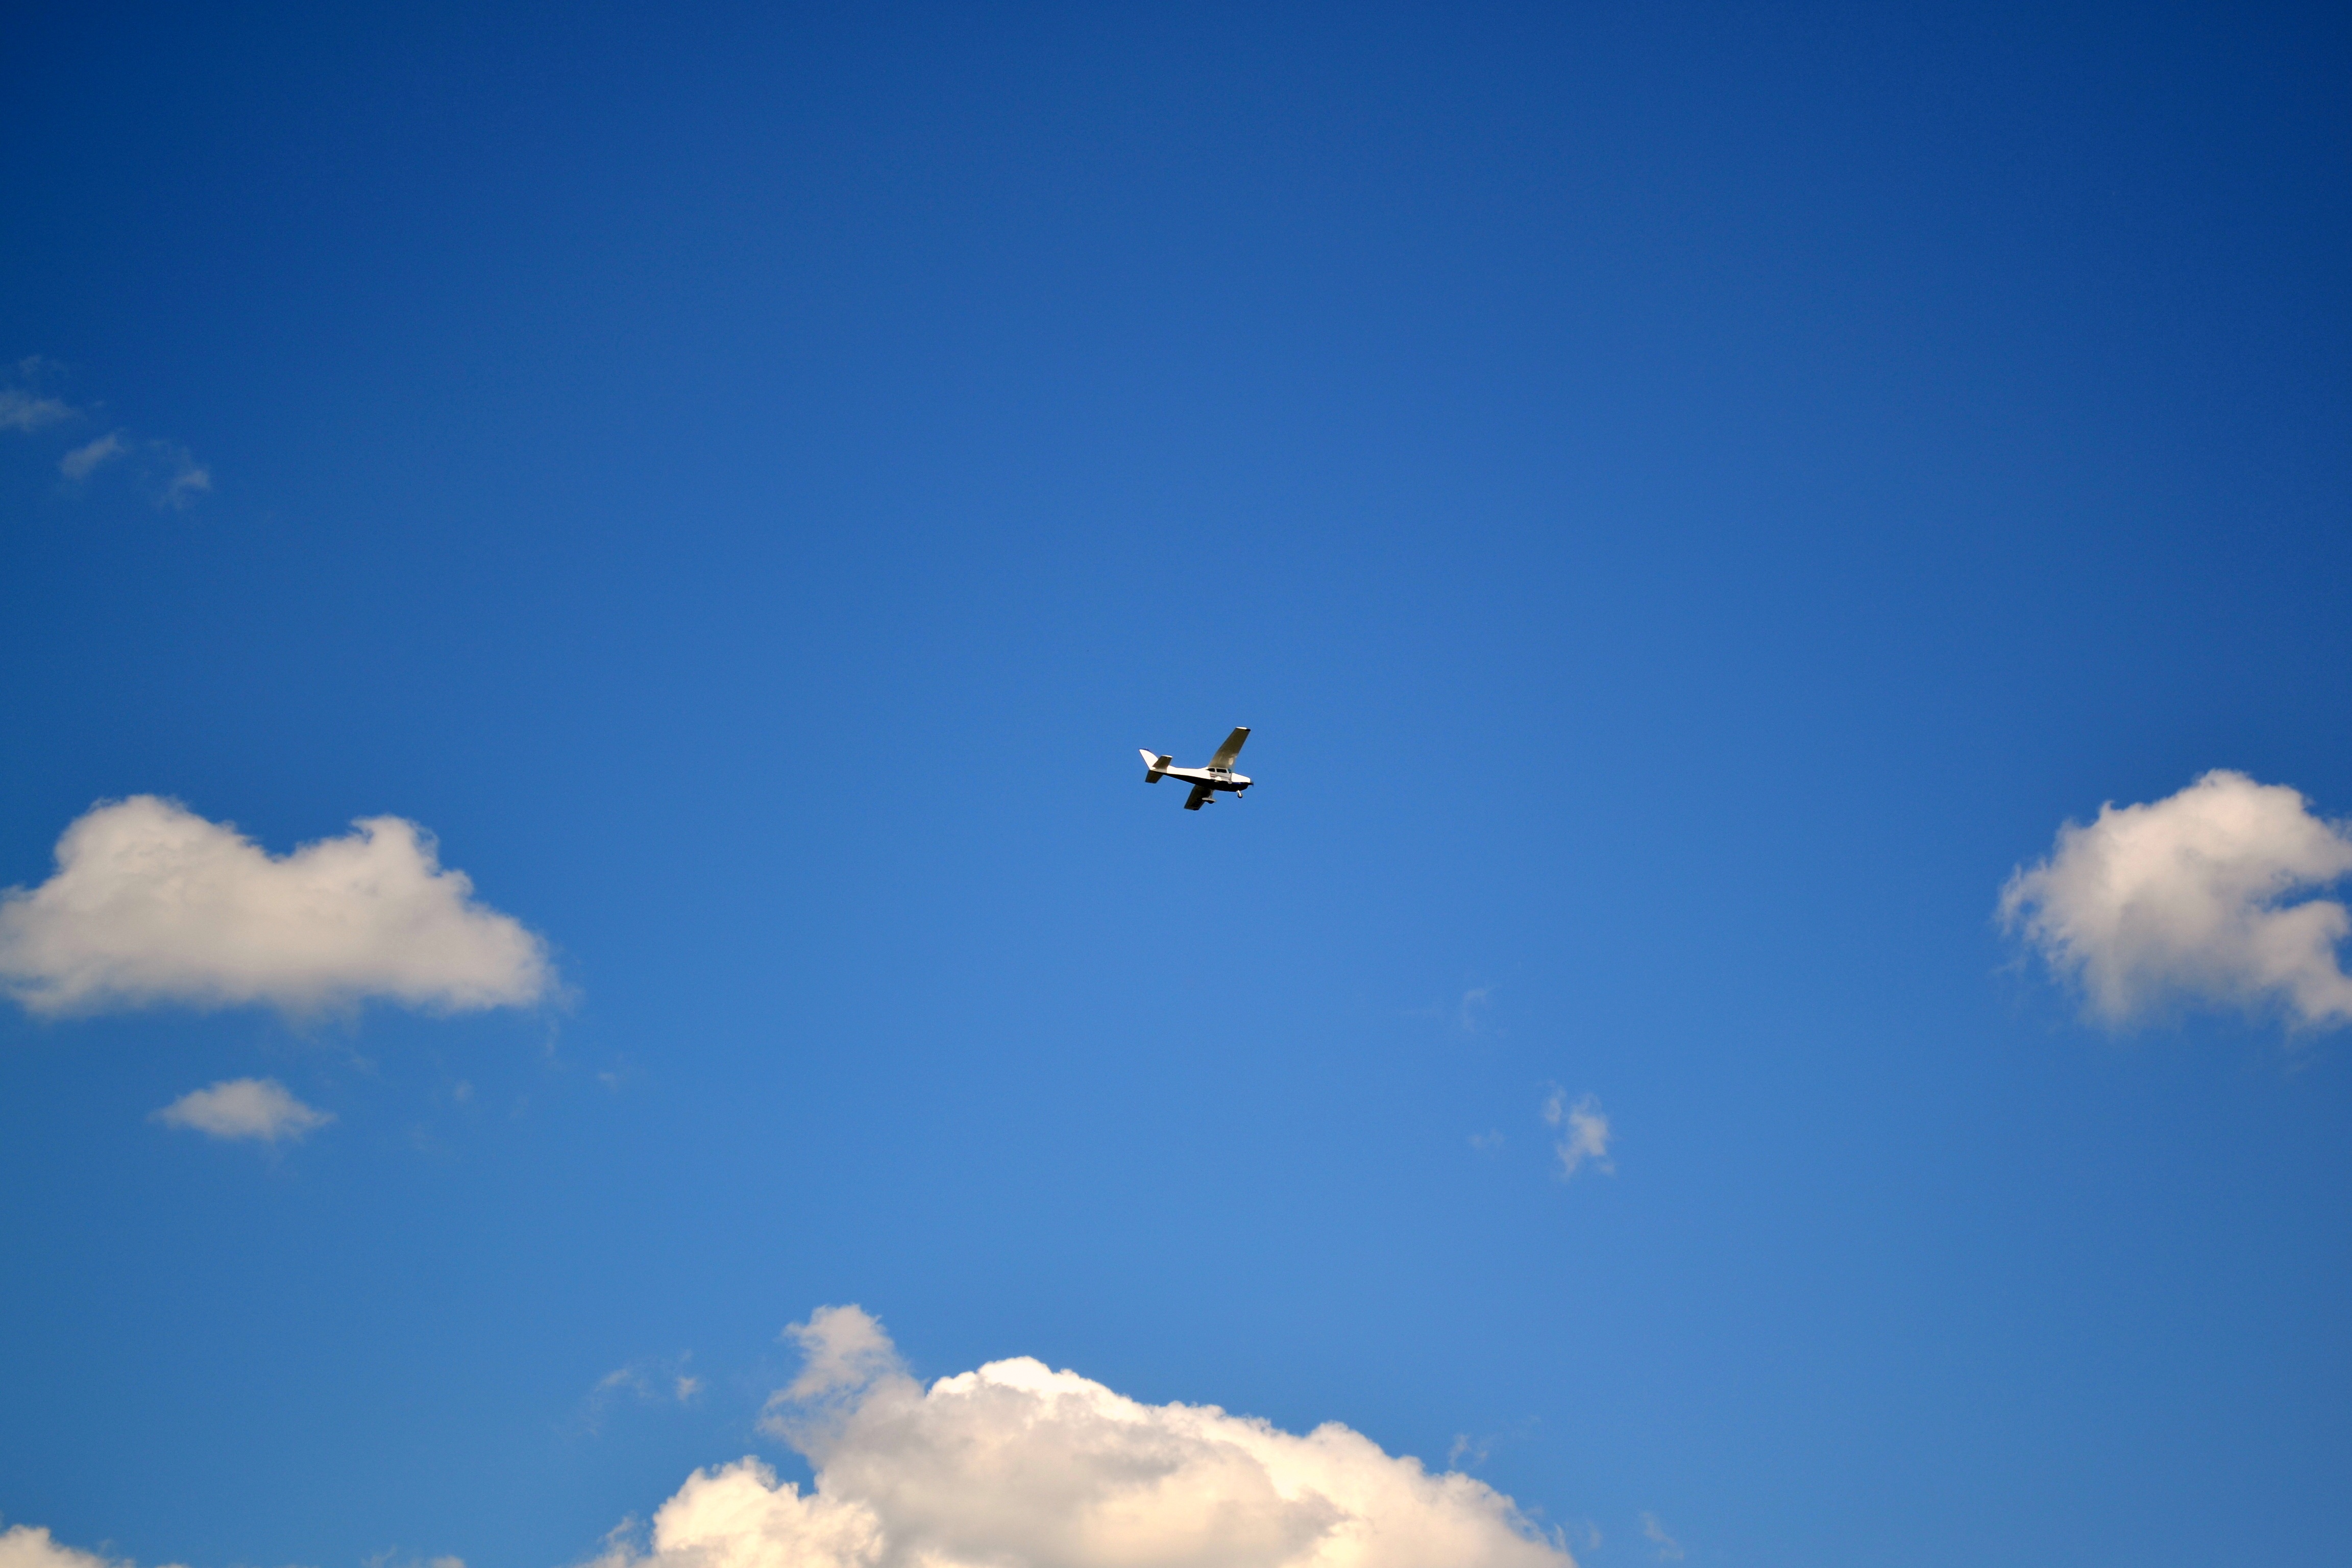 Fly traveler. Самолет в небе. Самолеты в небе изображают фигуры. 10 Самолетиков в небе летает. Мечта самолет небо.